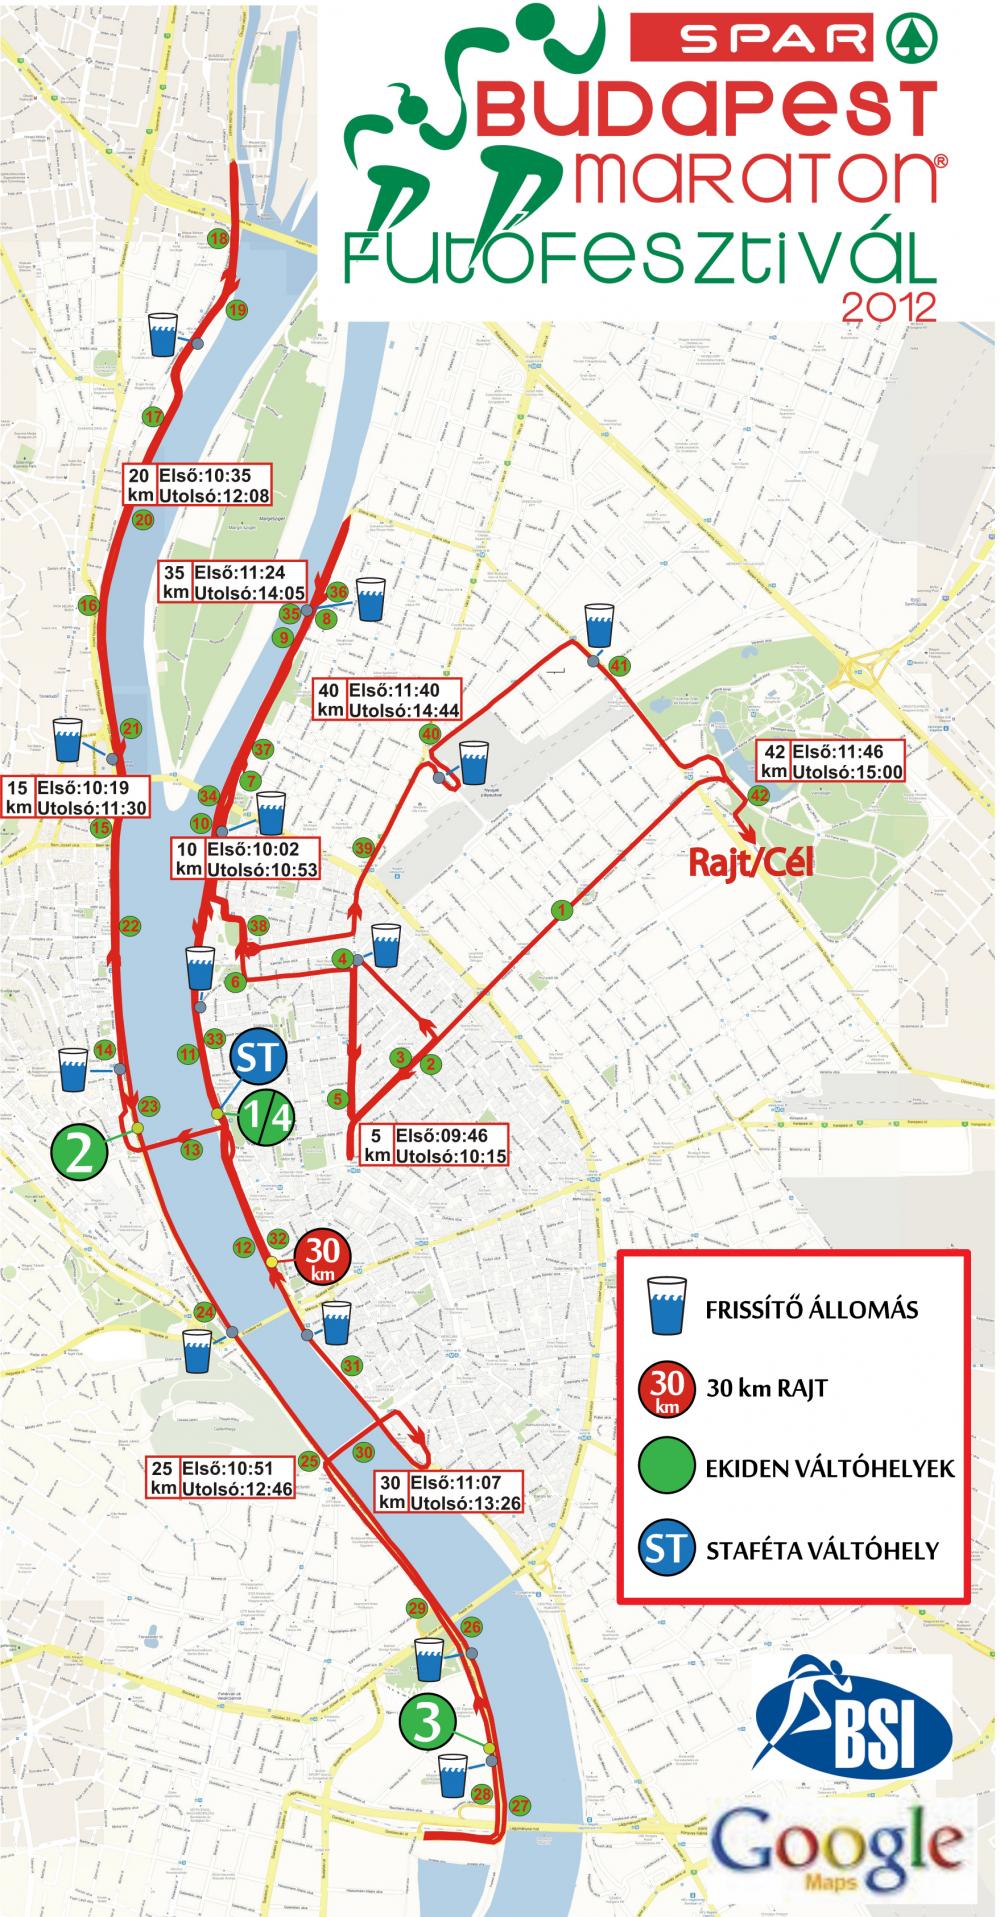 utvonal térkép budapest 27. Spar Budapest Maraton   térkép   Futanet.hu utvonal térkép budapest